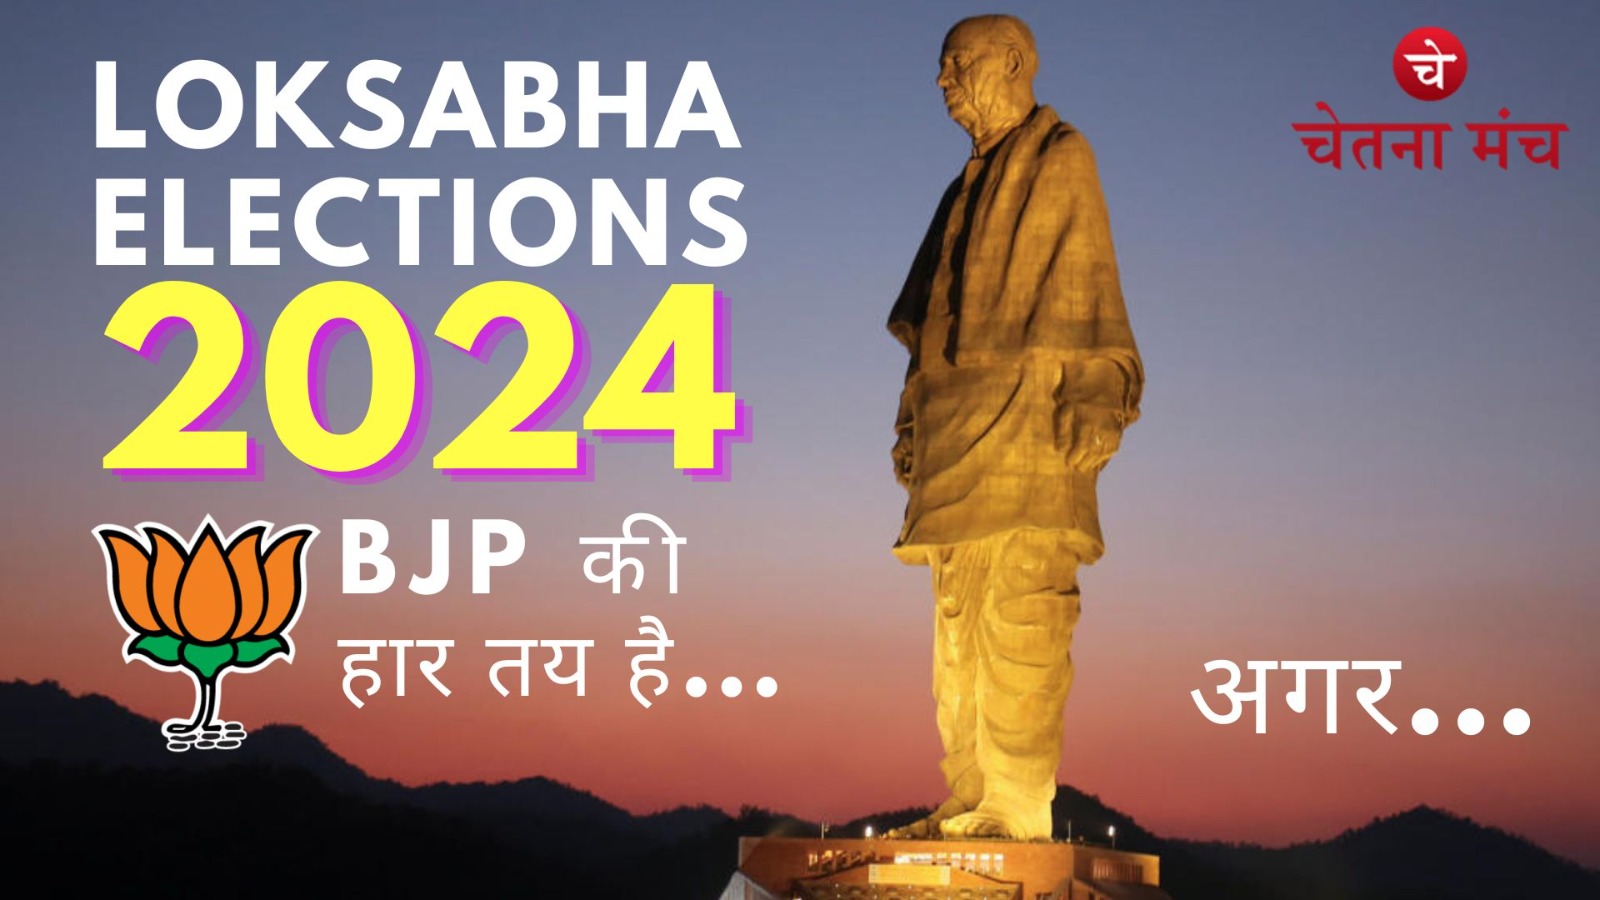 Loksabha Elections 2024: सिर्फ सरदार वल्लभ भाई पटेल ही हराएंगे BJP को आगामी चुनाव मे